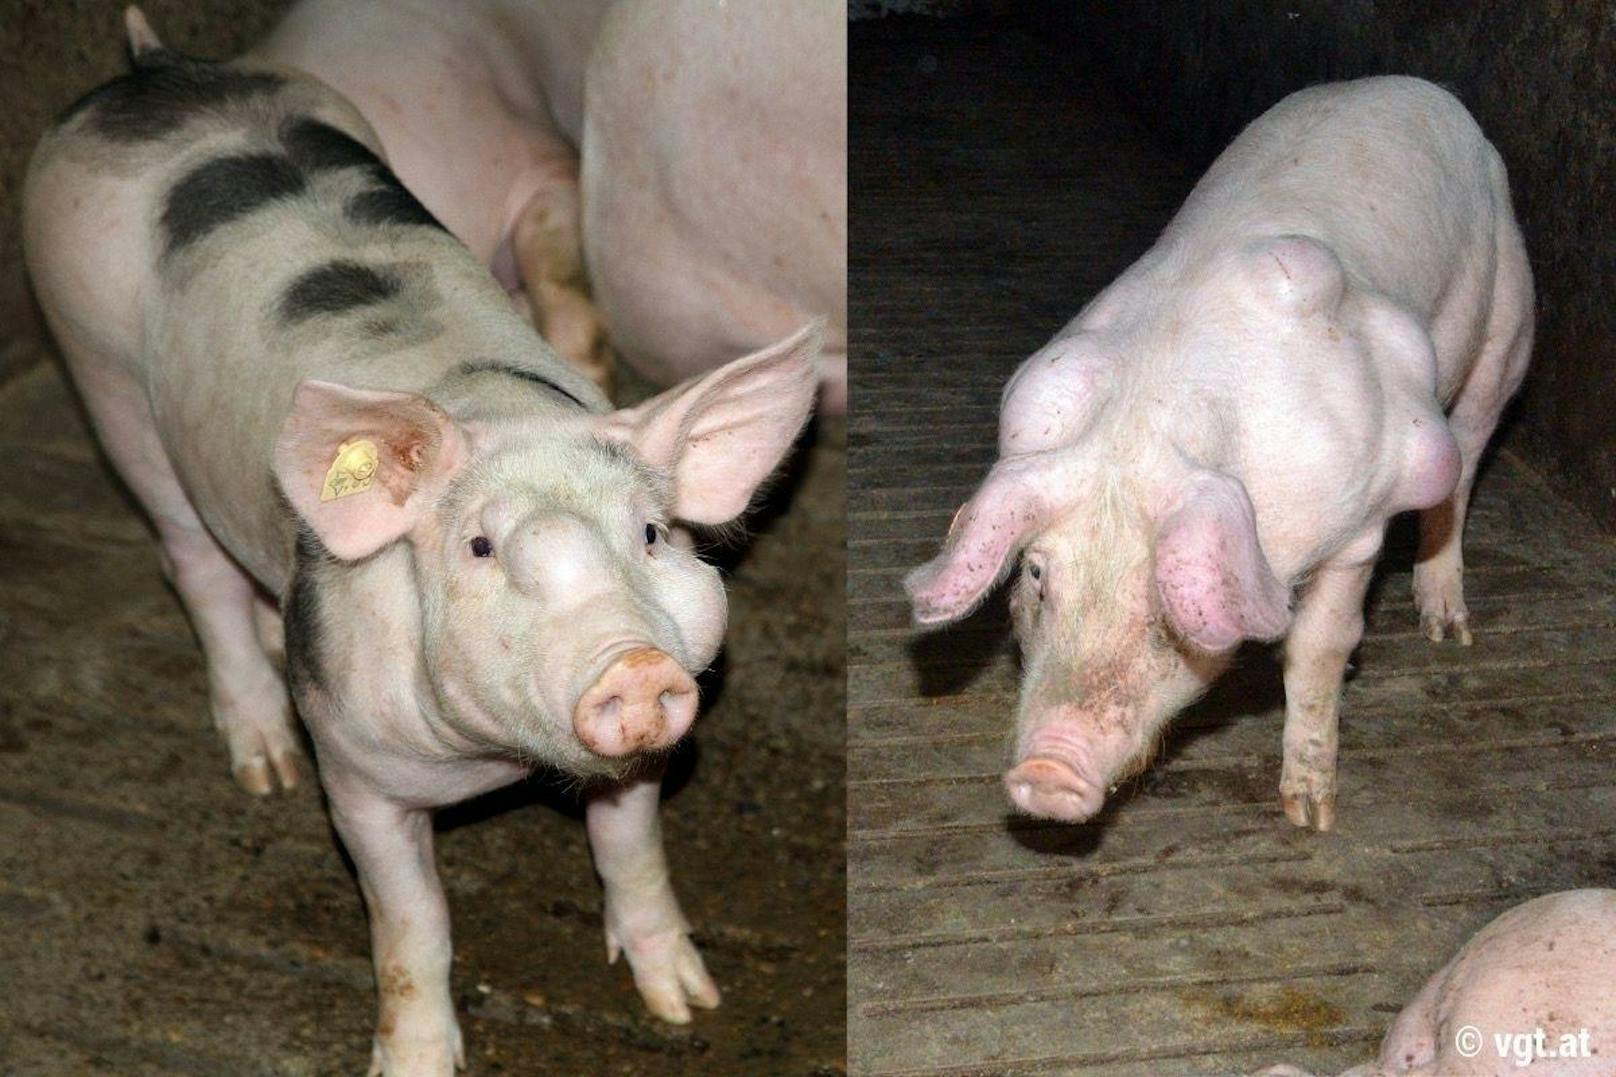 Vorwurf des VGT: "Schweine vegetieren in der Dunkelheit dahin."